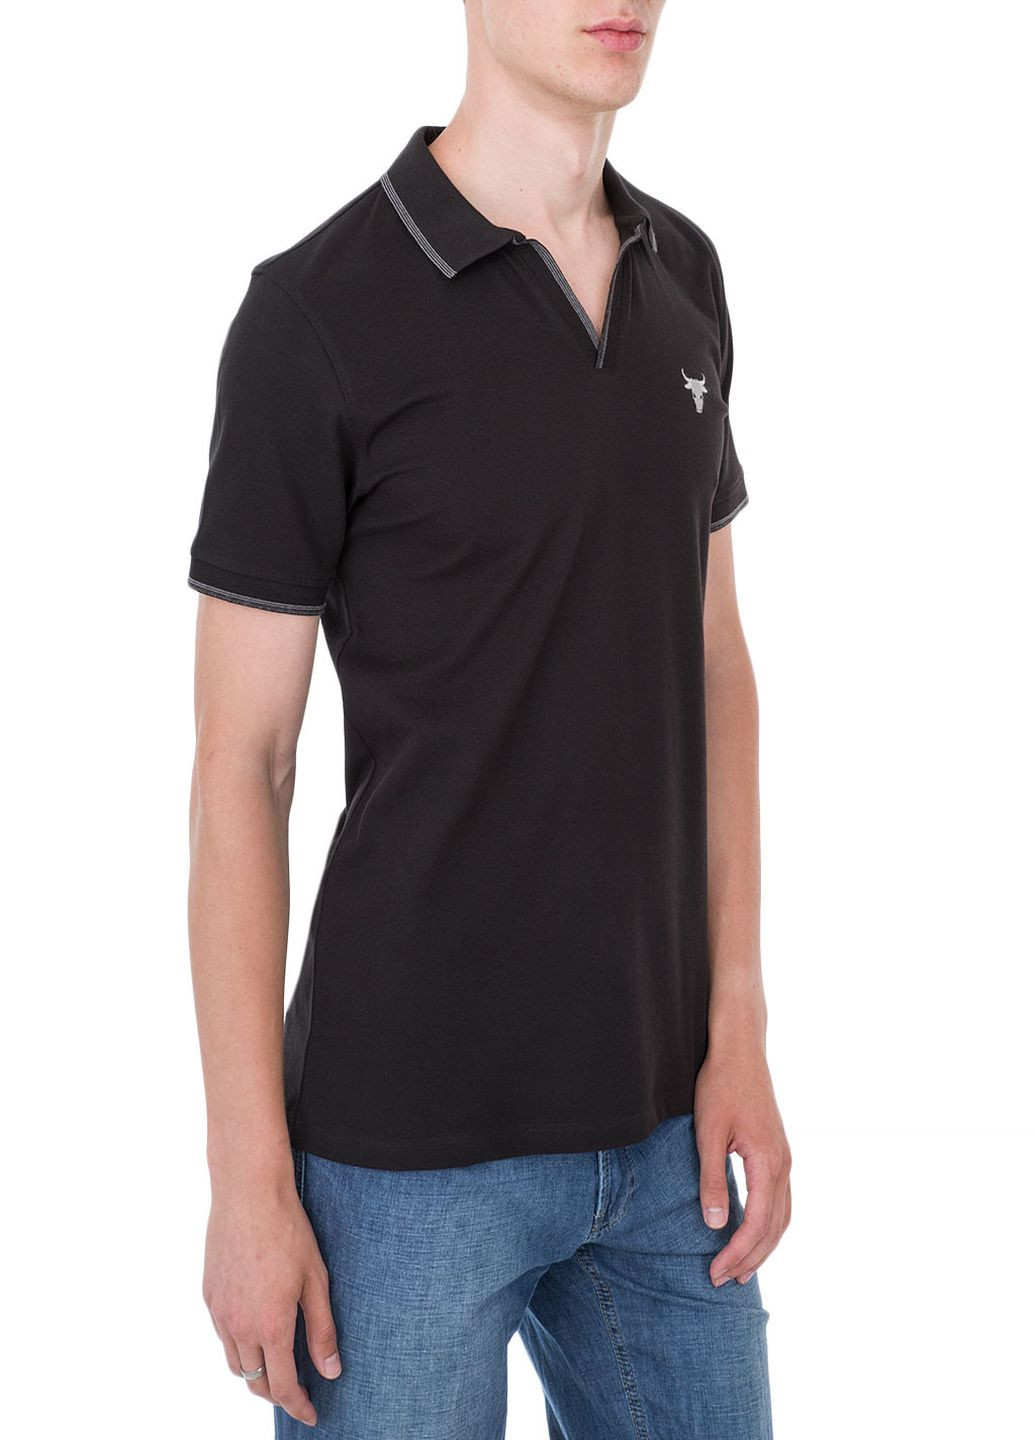 Черная футболка-поло чоловіче для мужчин IK5 с логотипом